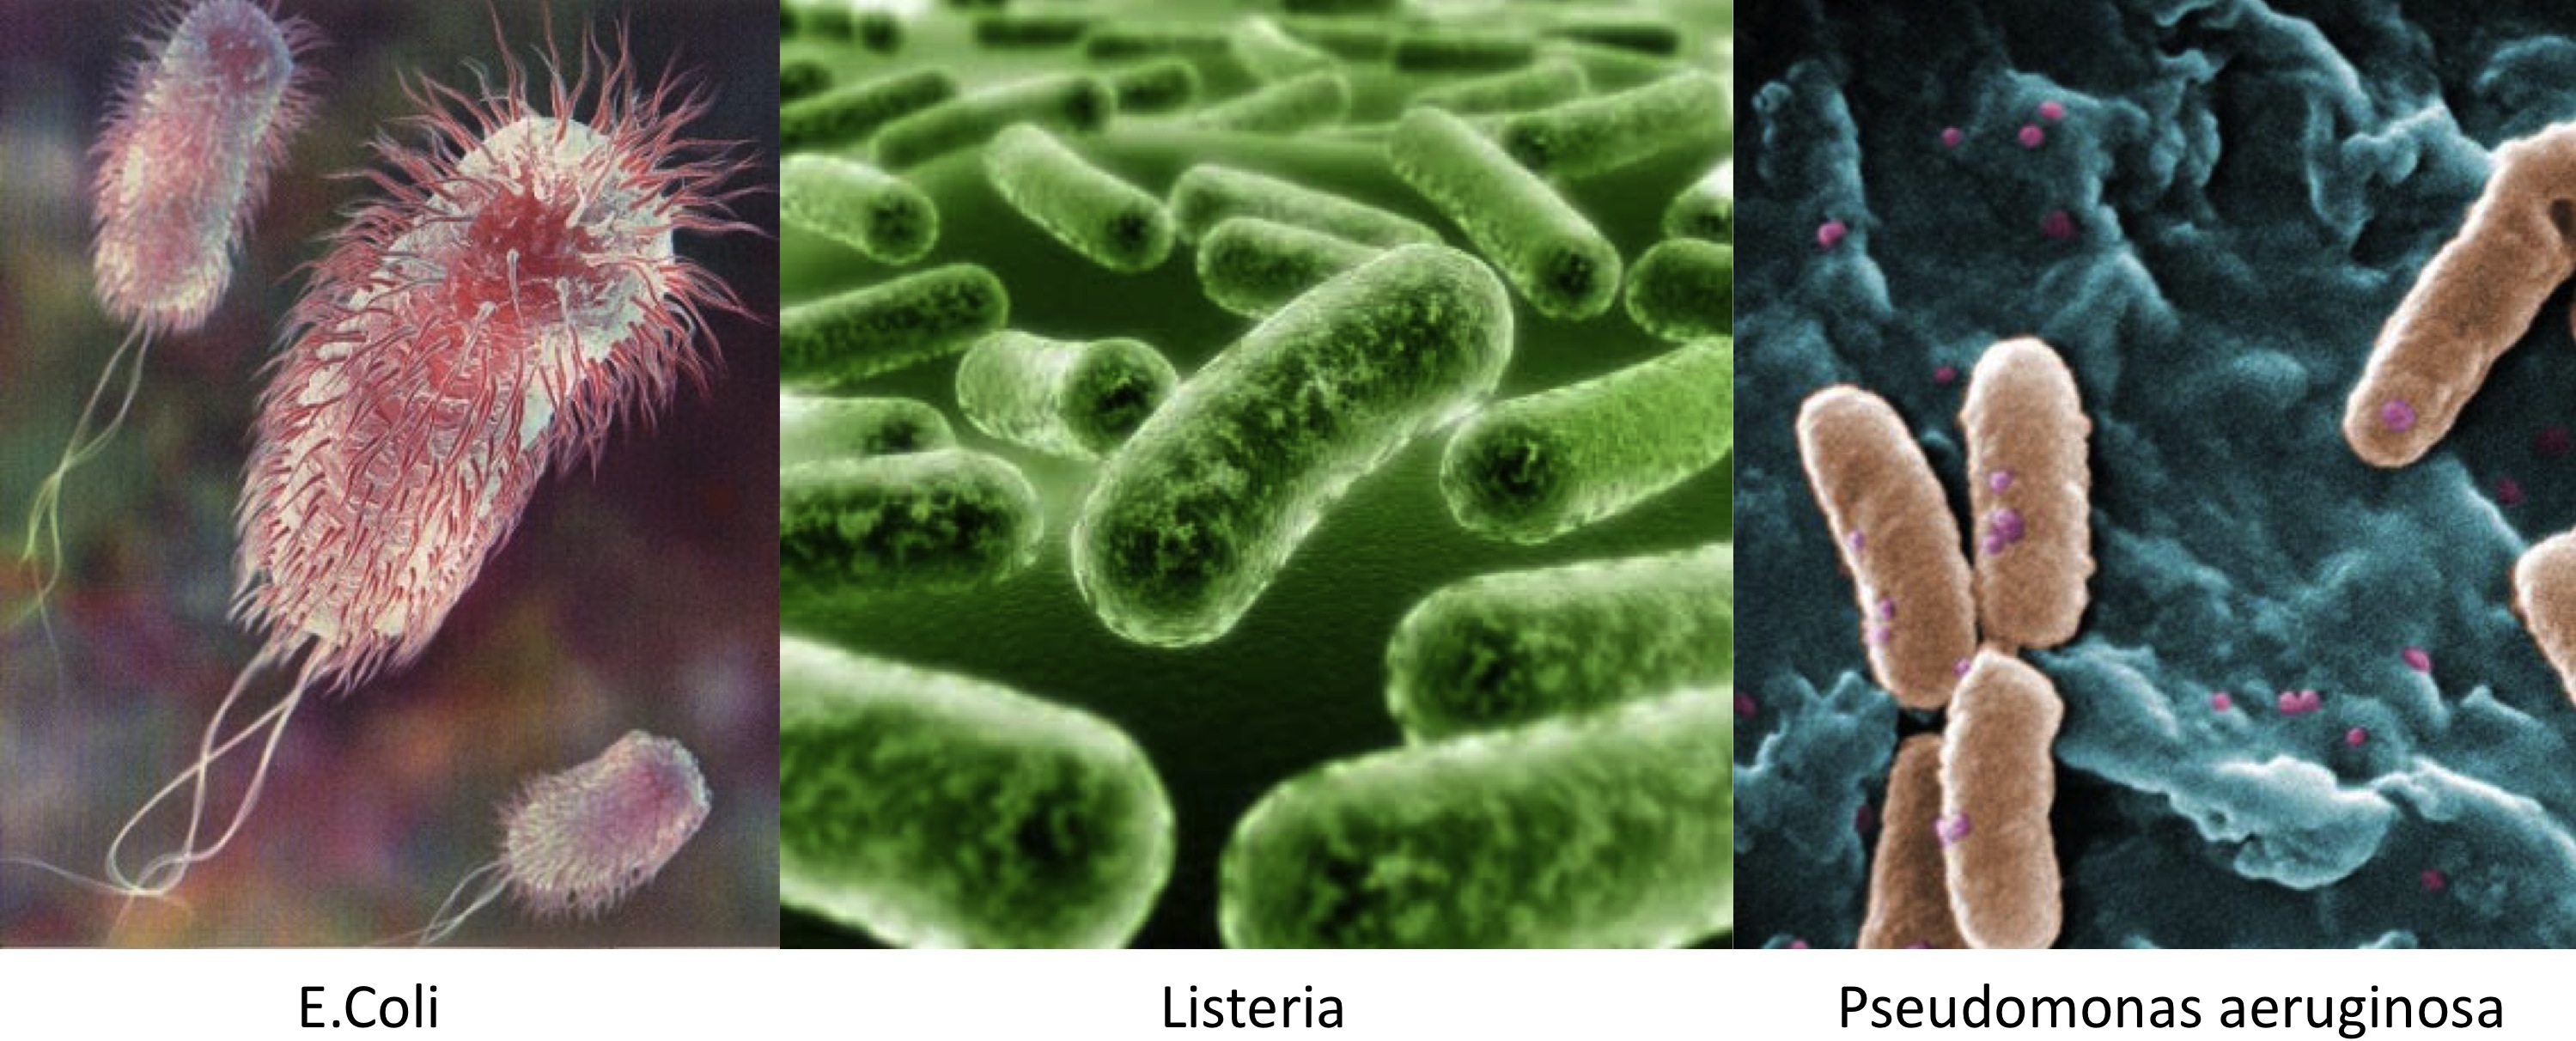 http://bioniusa.files.wordpress.com/2011/02/e-coli-listeria.jpg